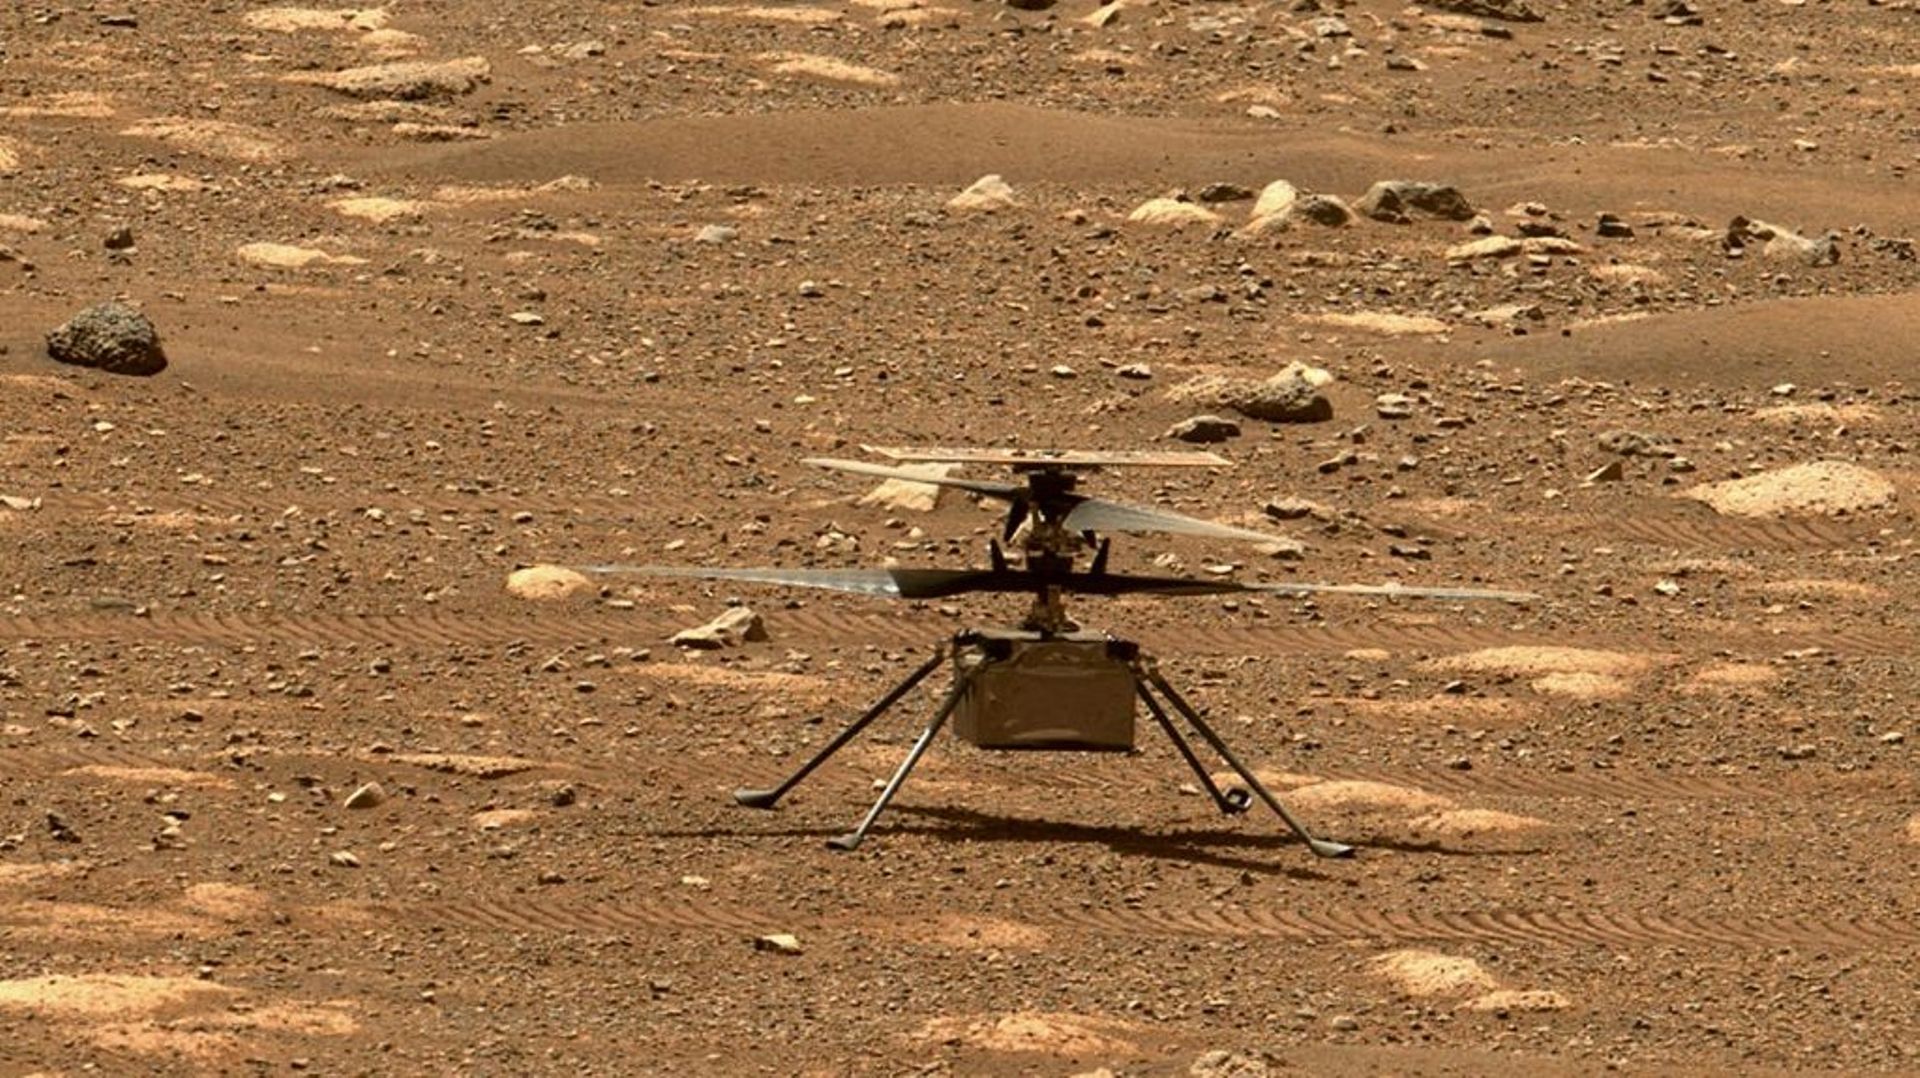 L'hélicoptère de la Nasa Ingenuity sur Mars, le 7 avril 2021